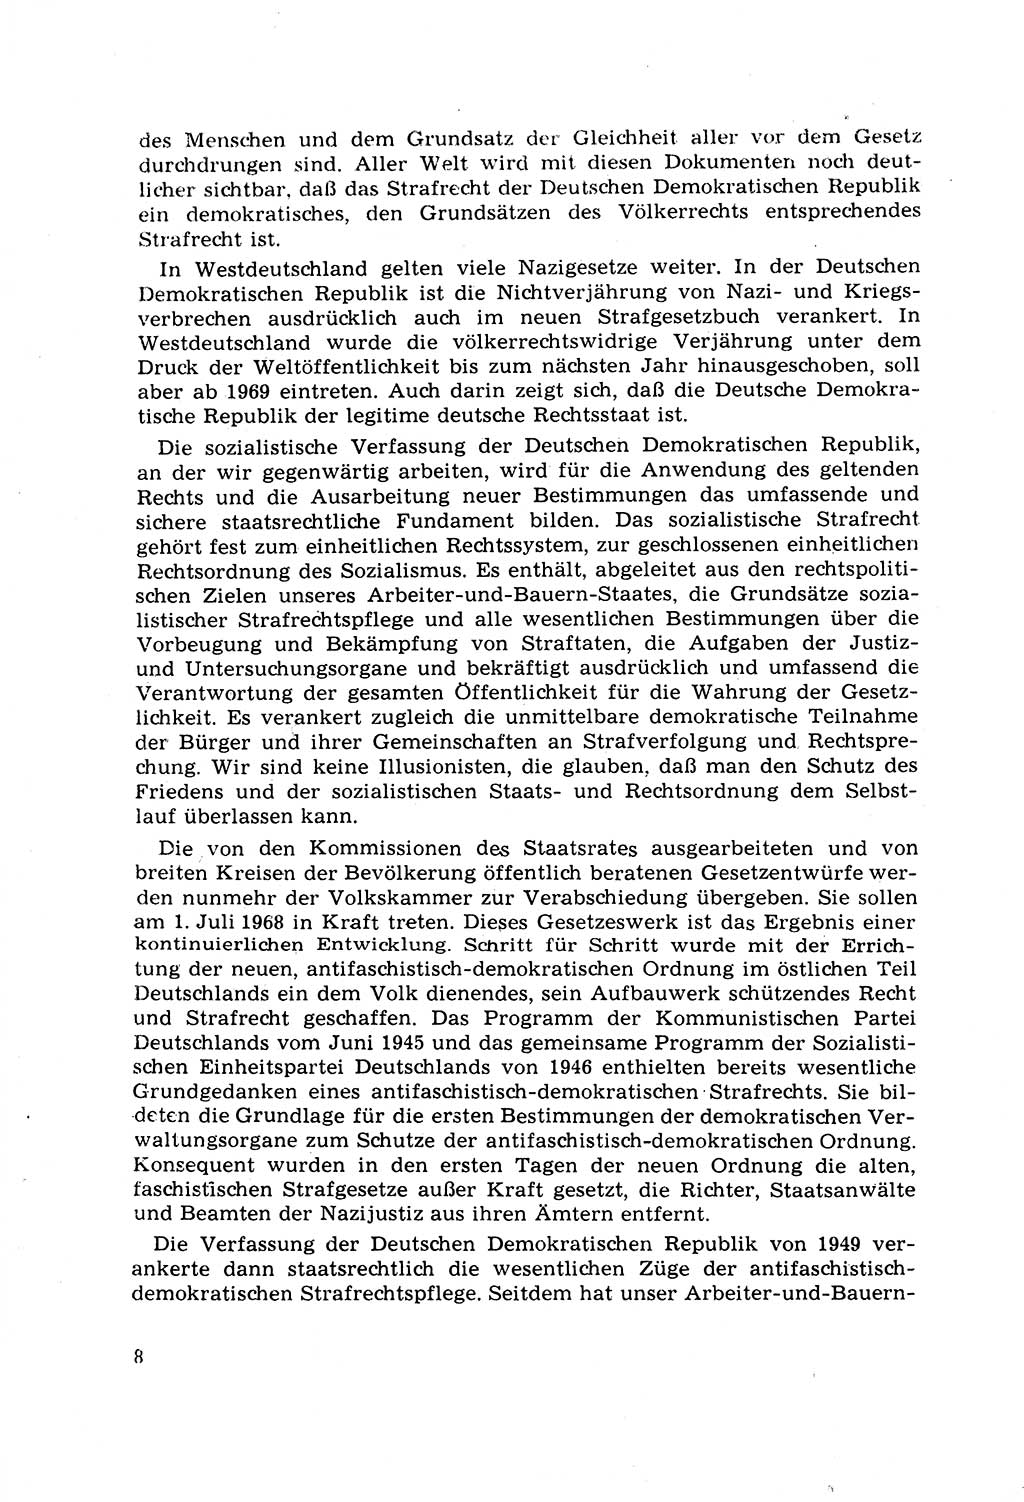 Strafrecht [Deutsche Demokratische Republik (DDR)] 1968, Seite 8 (Strafr. DDR 1968, S. 8)